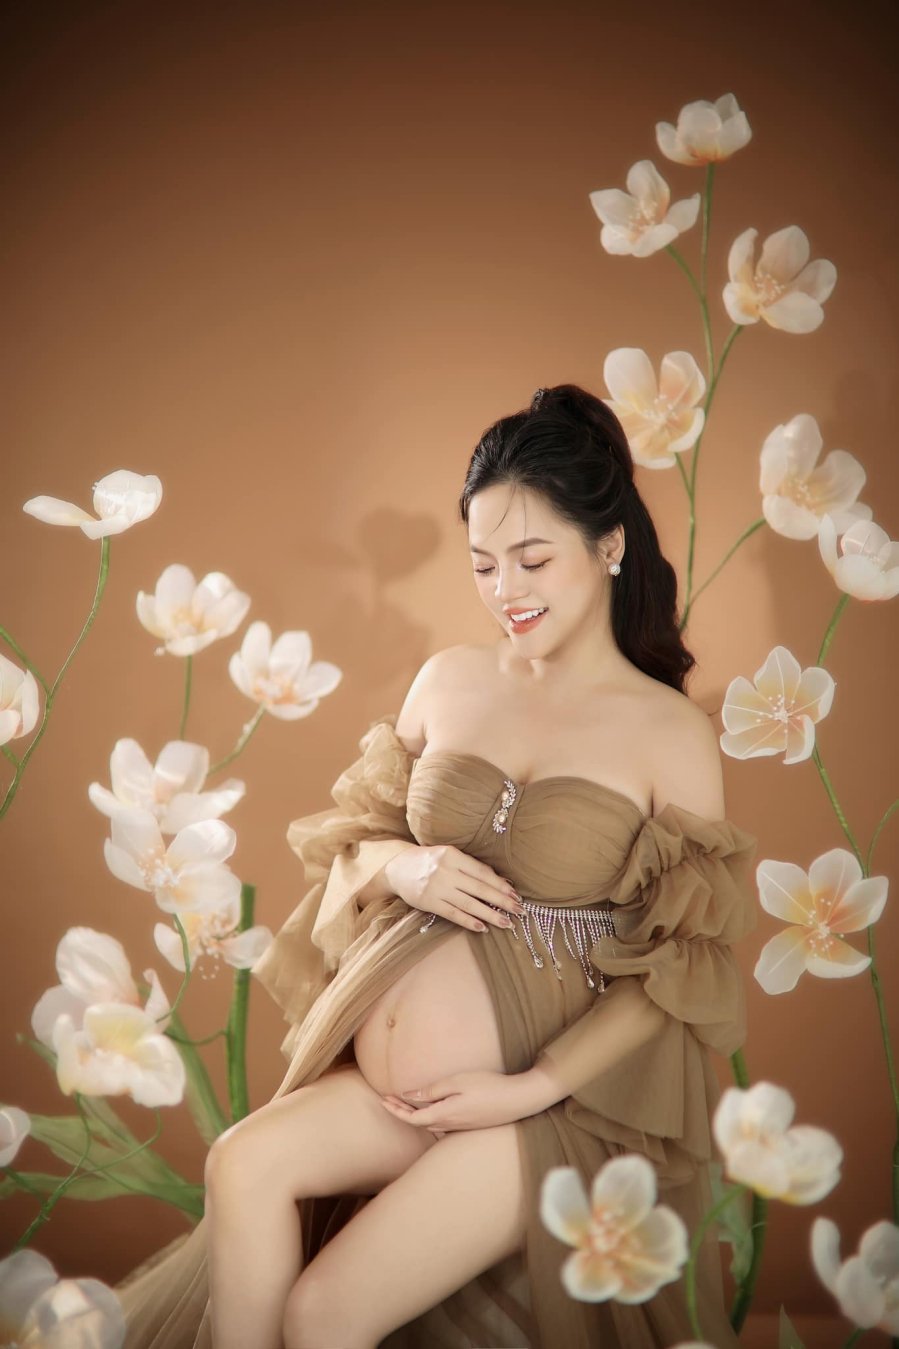 Trên trang cá nhân, nữ diễn viên Thu Quỳnh đăng tải loạt ảnh xinh đẹp rạng ngời trong giai đoạn cuối của thai kỳ. Cô tiết lộ cô vẫn sẽ là mẹ đơn thân: 